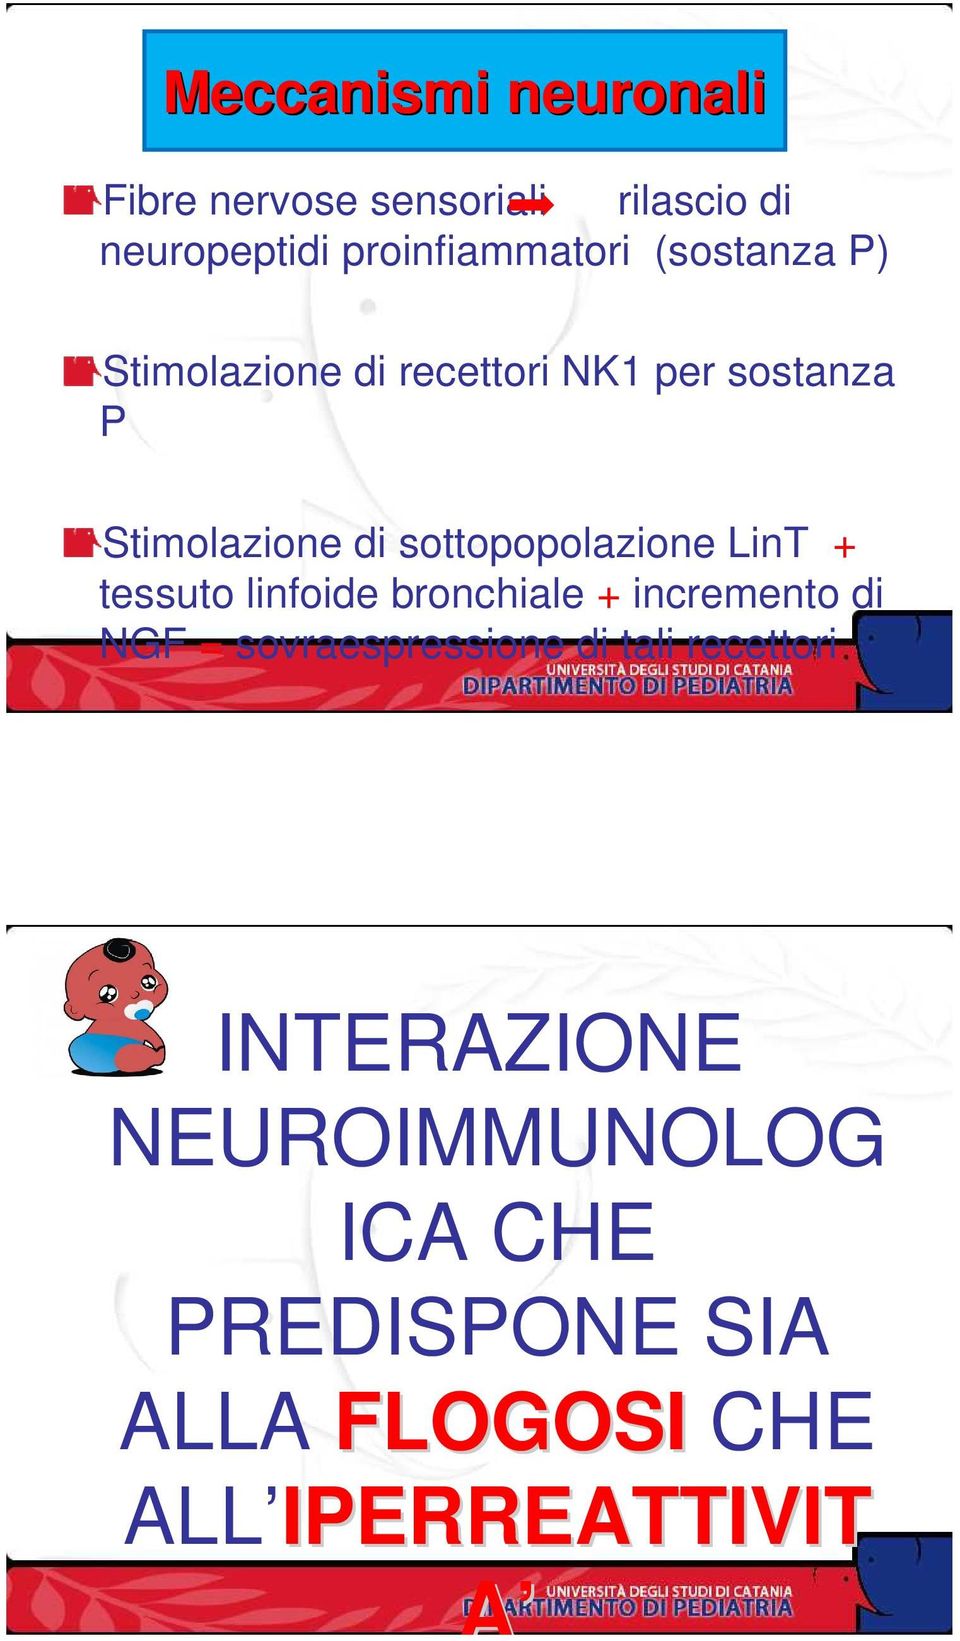 sottopopolazione LinT + tessuto linfoide bronchiale + incremento di NGF =